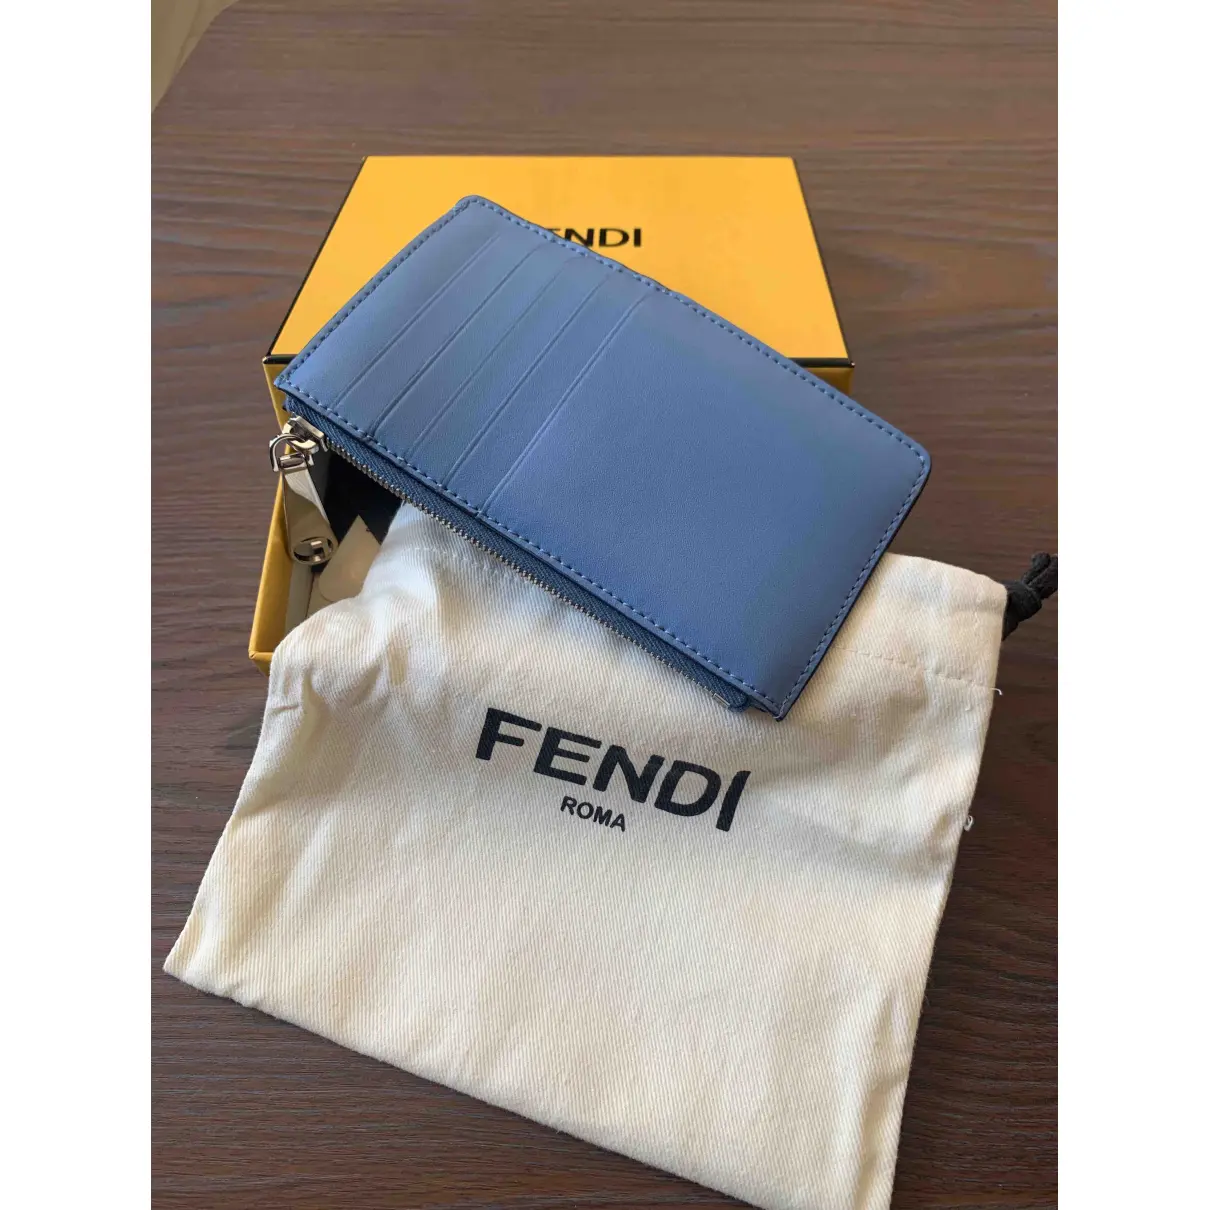 Buy Fendi Leather card wallet online